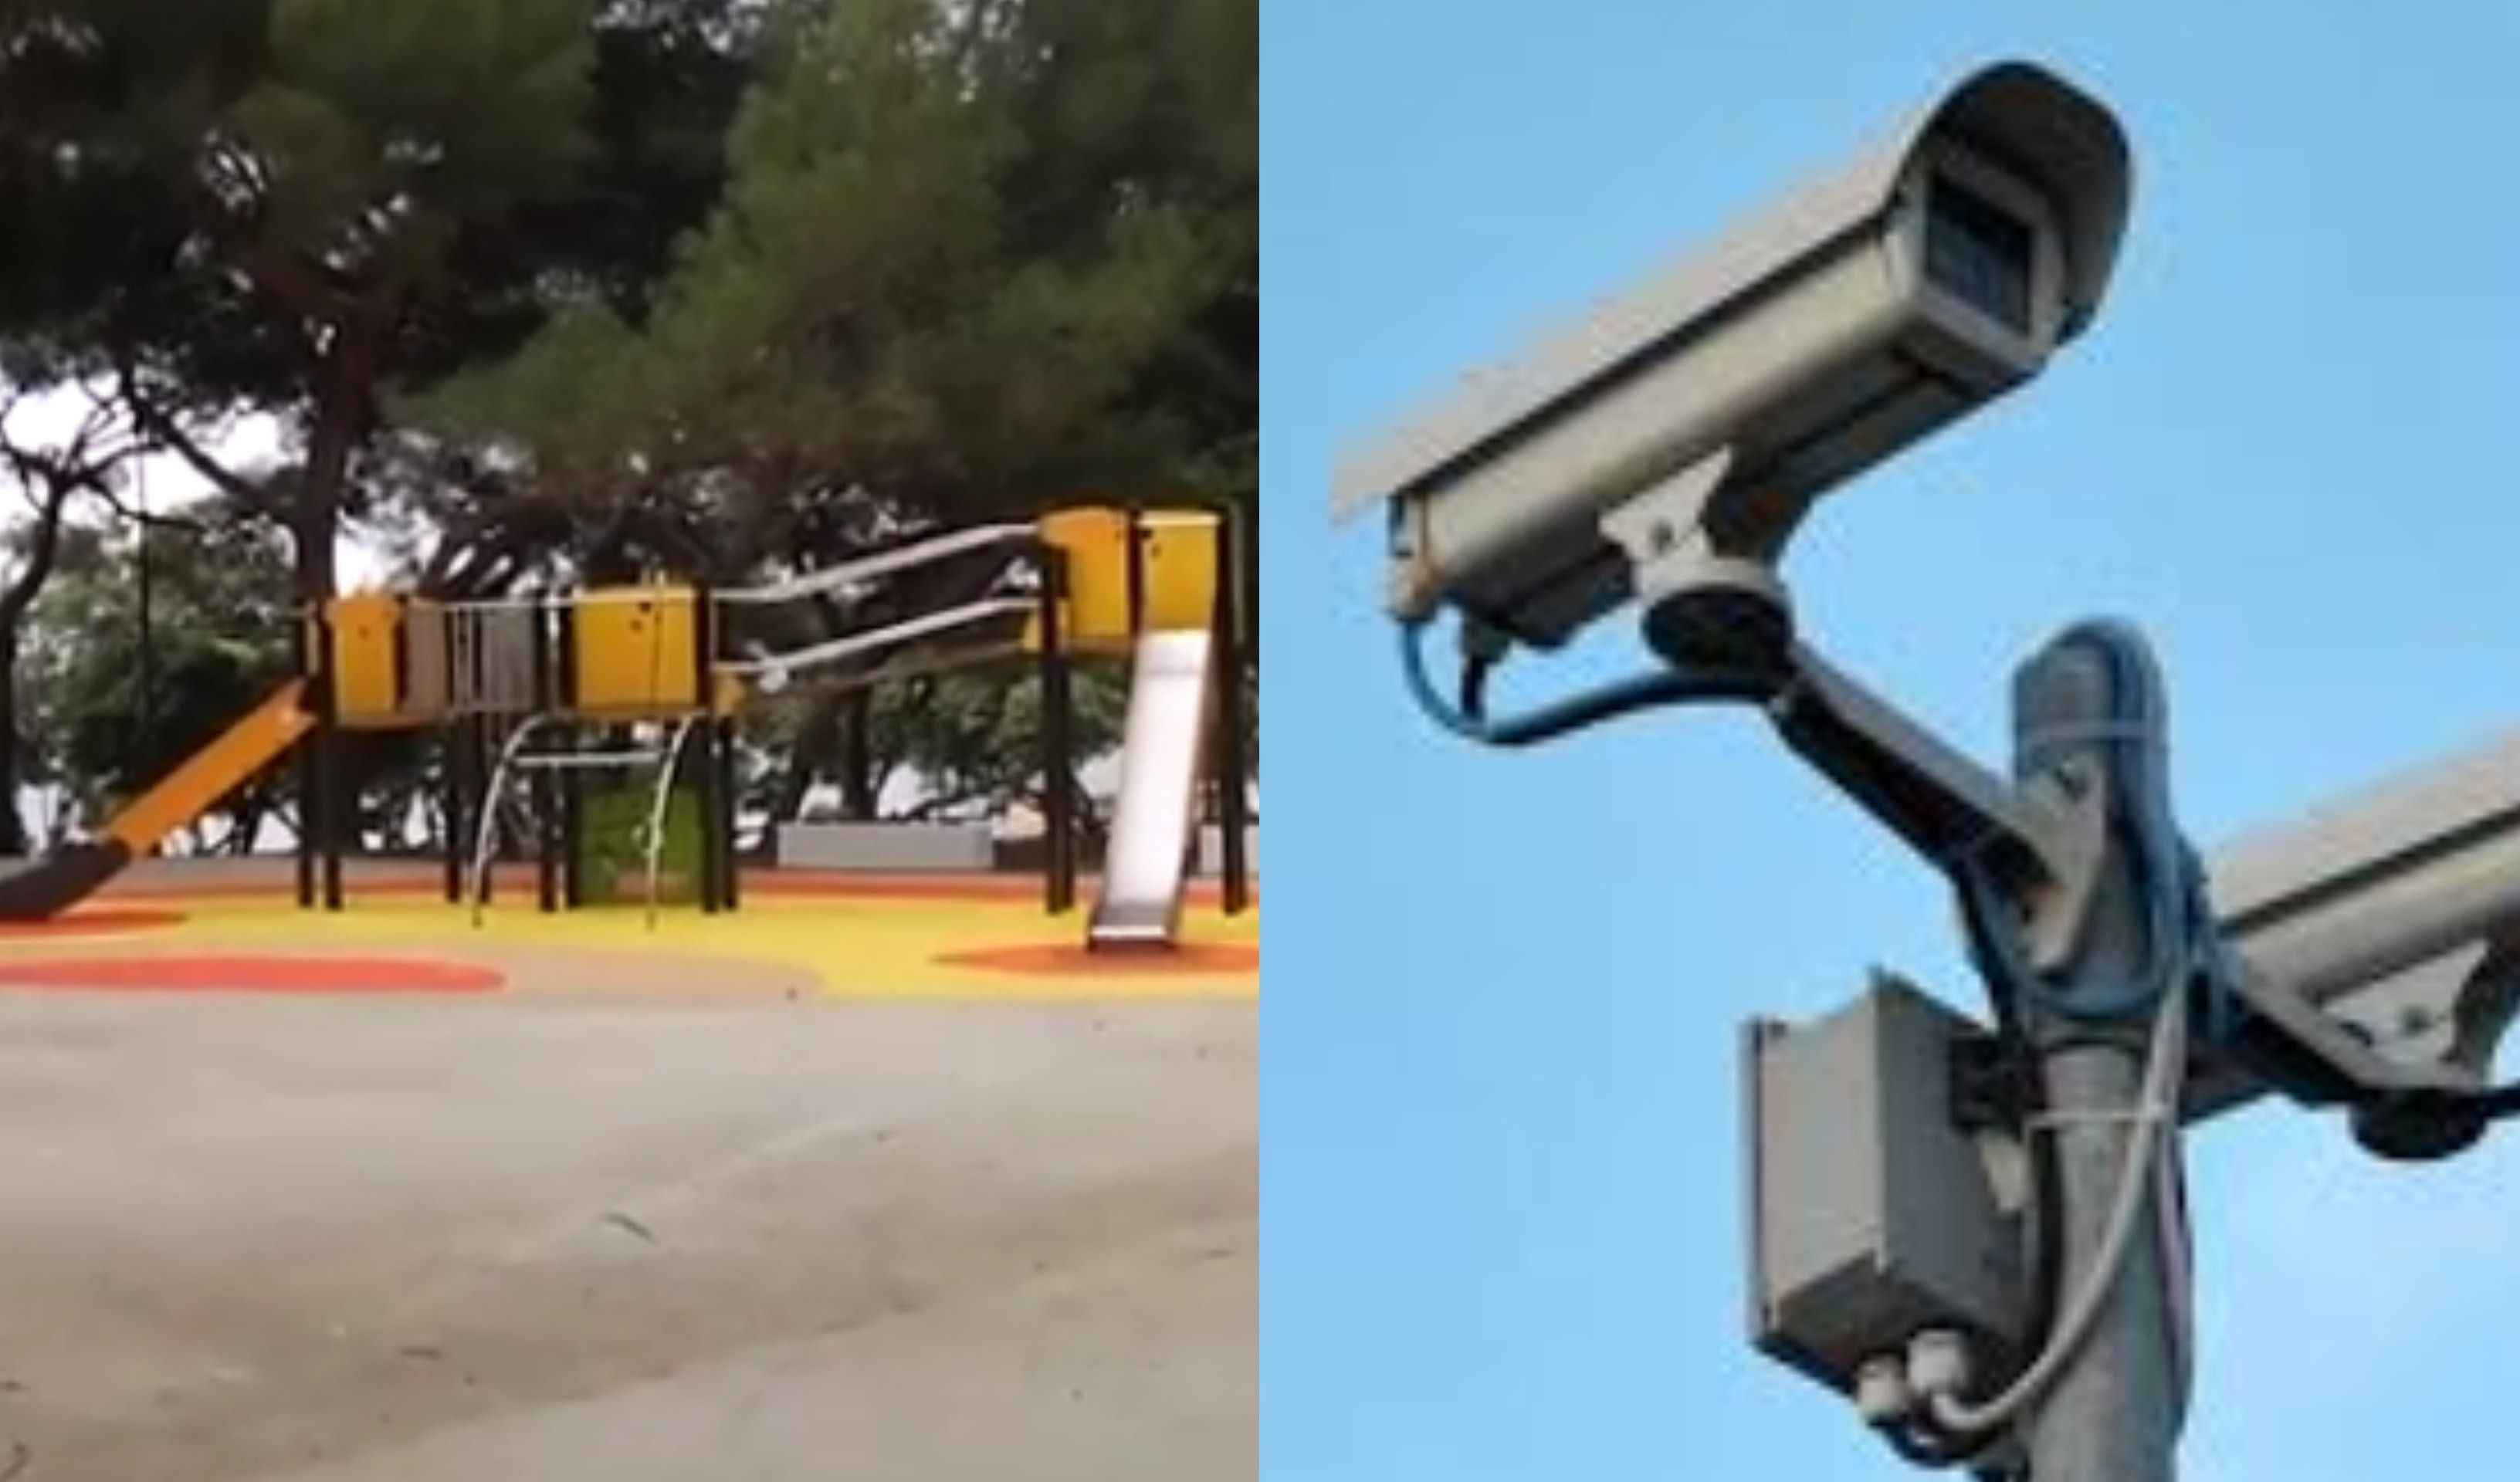 Genova, malamovida e violenza: due nuove telecamere ai giardini di Quinto